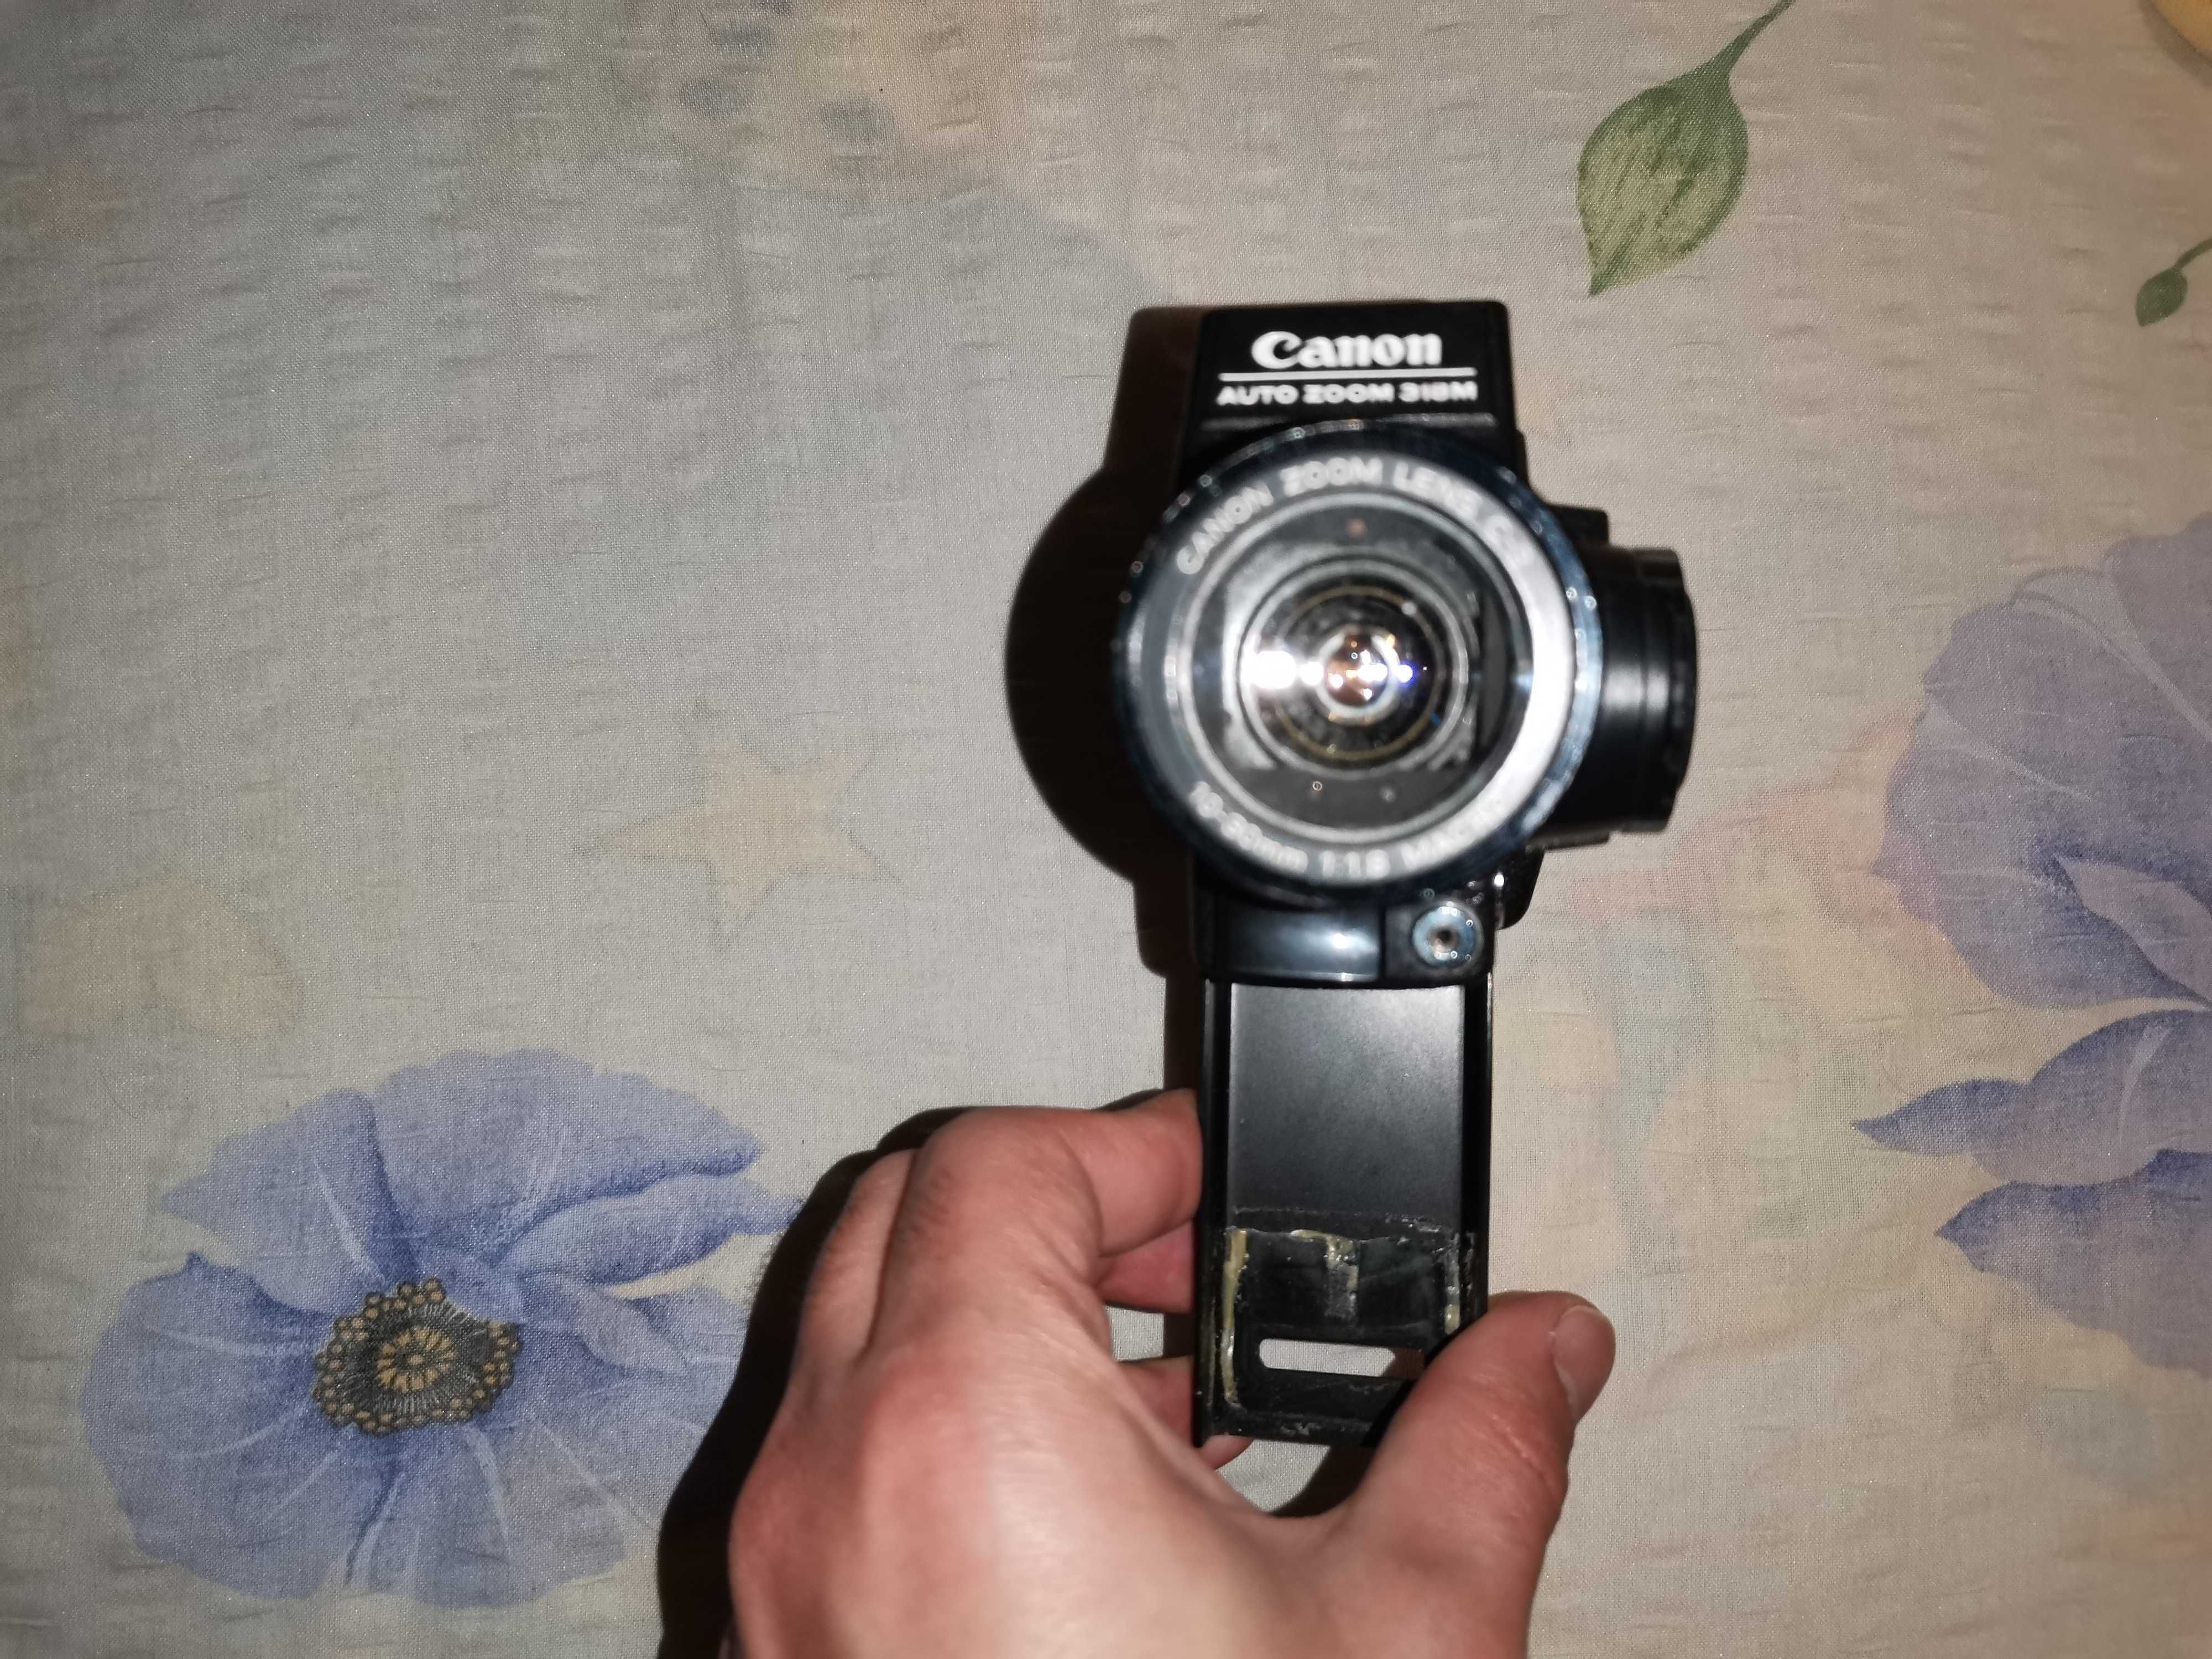 Camera Canon Auto Zoom 318M